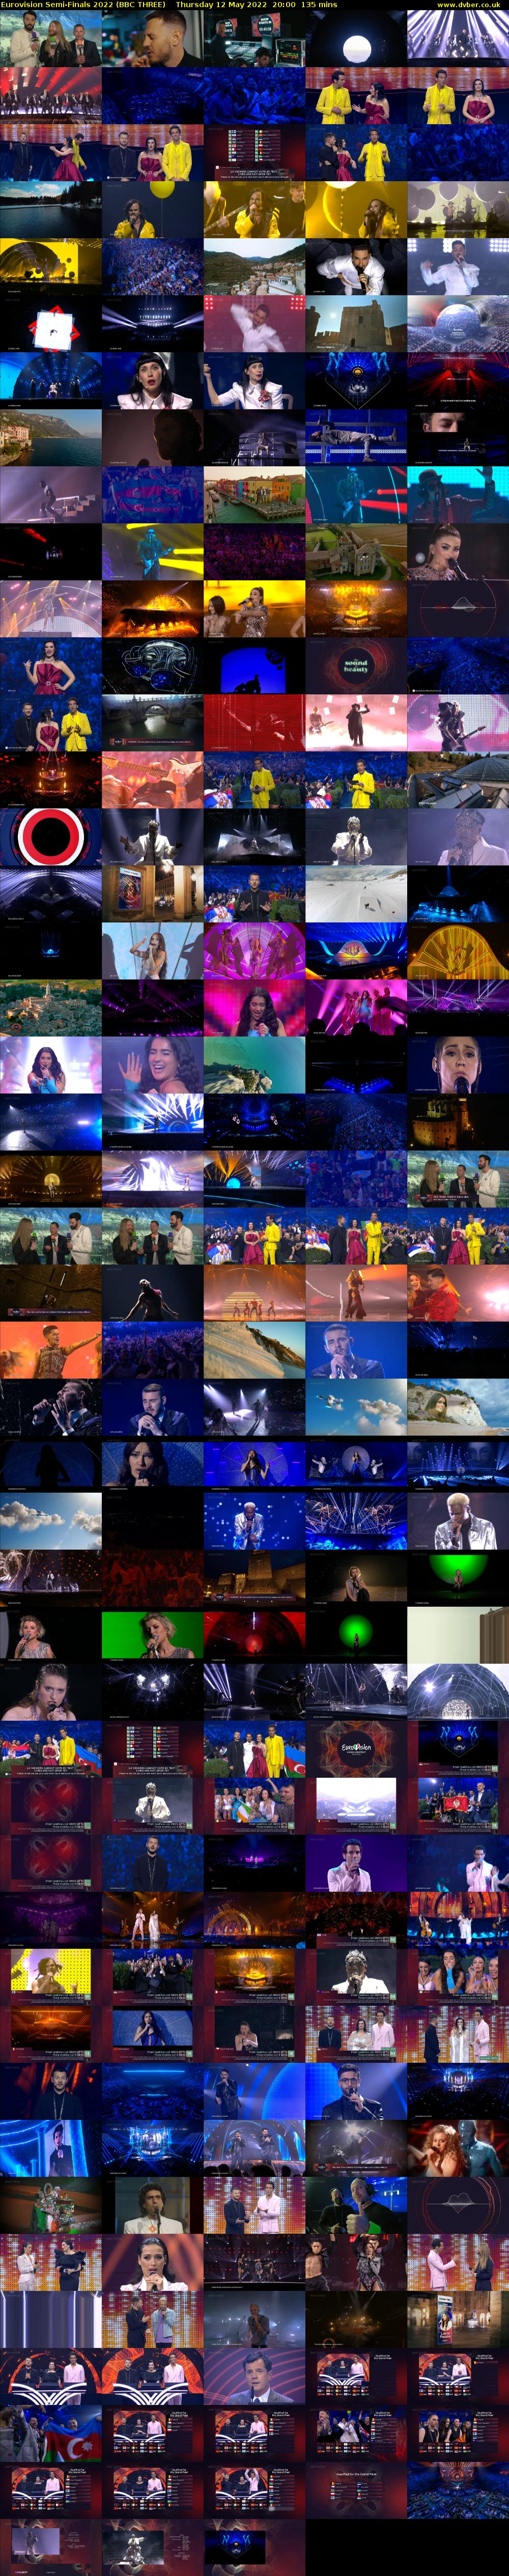 Eurovision Semi-Finals 2022 (BBC THREE) Thursday 12 May 2022 20:00 - 22:15